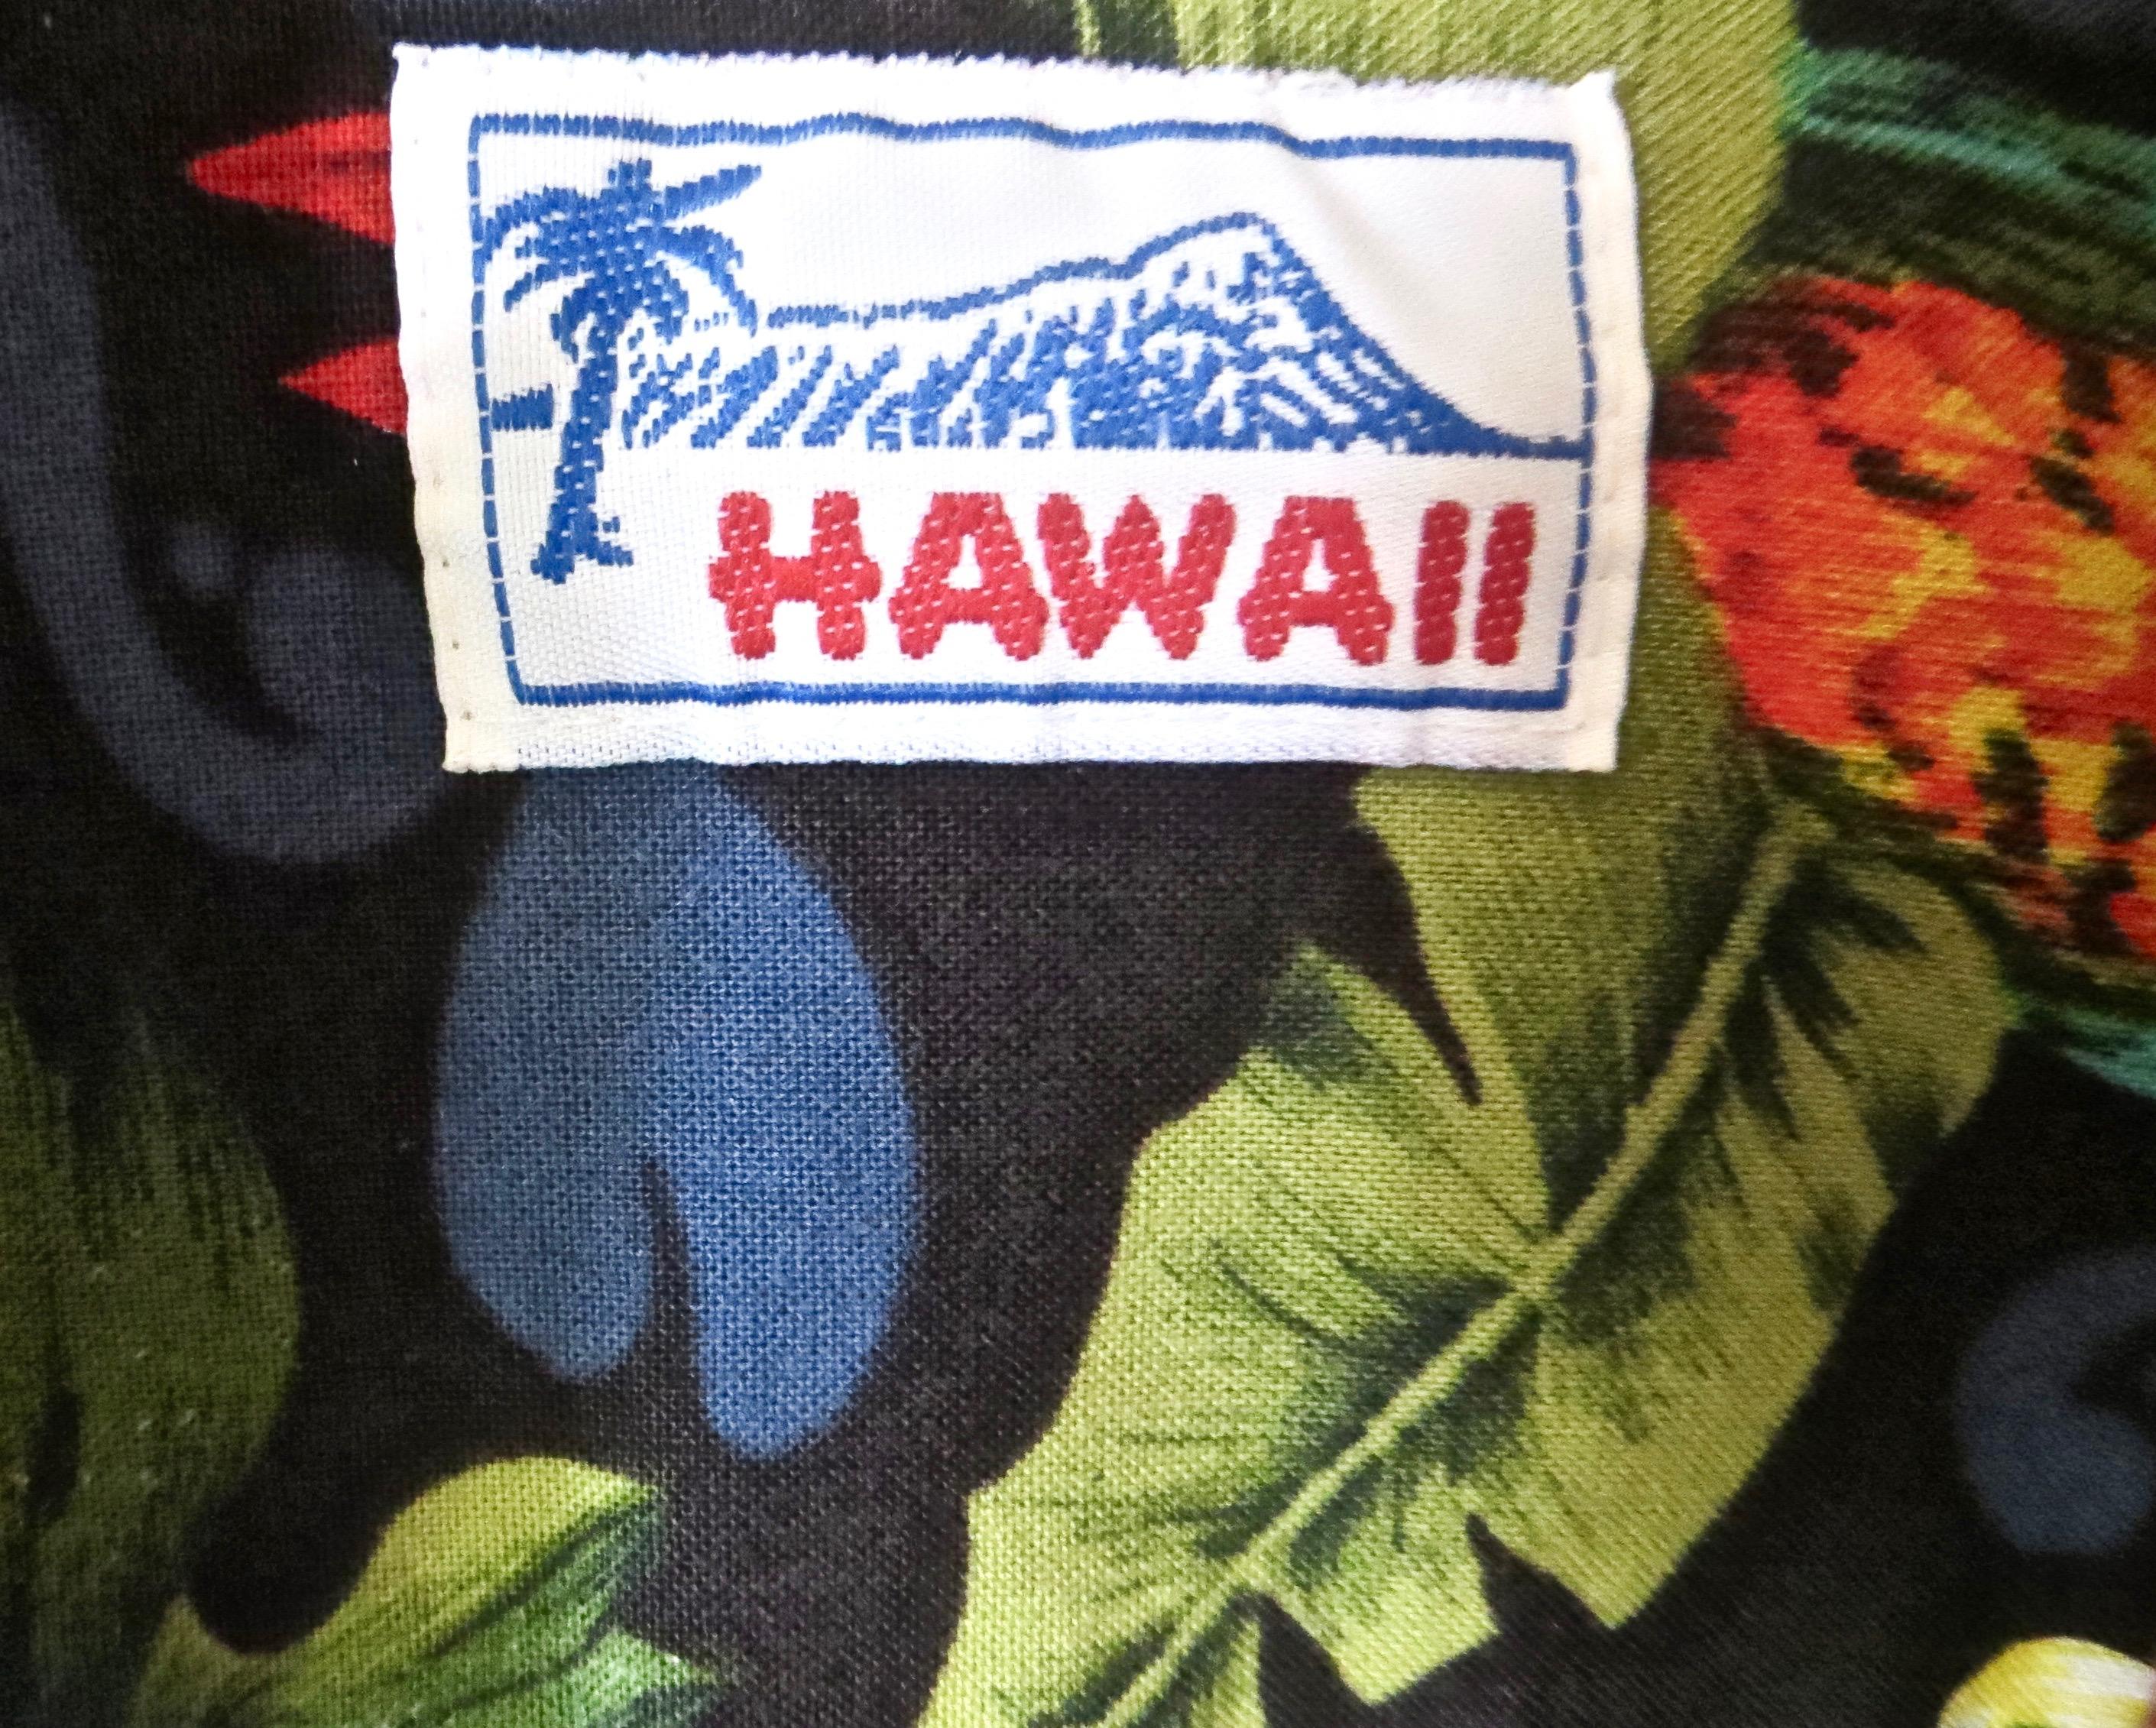 Baumwoll-Hawaii-Hemd im Vintage-Look mit Flora- und Fauna-Thema der hawaiianischen Inseln, darunter mehrere Papageien und zahlreiche Blumen in einer Vielzahl von knackigen, leuchtenden Farben wie Blau, Rot, Lila, Grün und Weiß; in sehr gutem Zustand